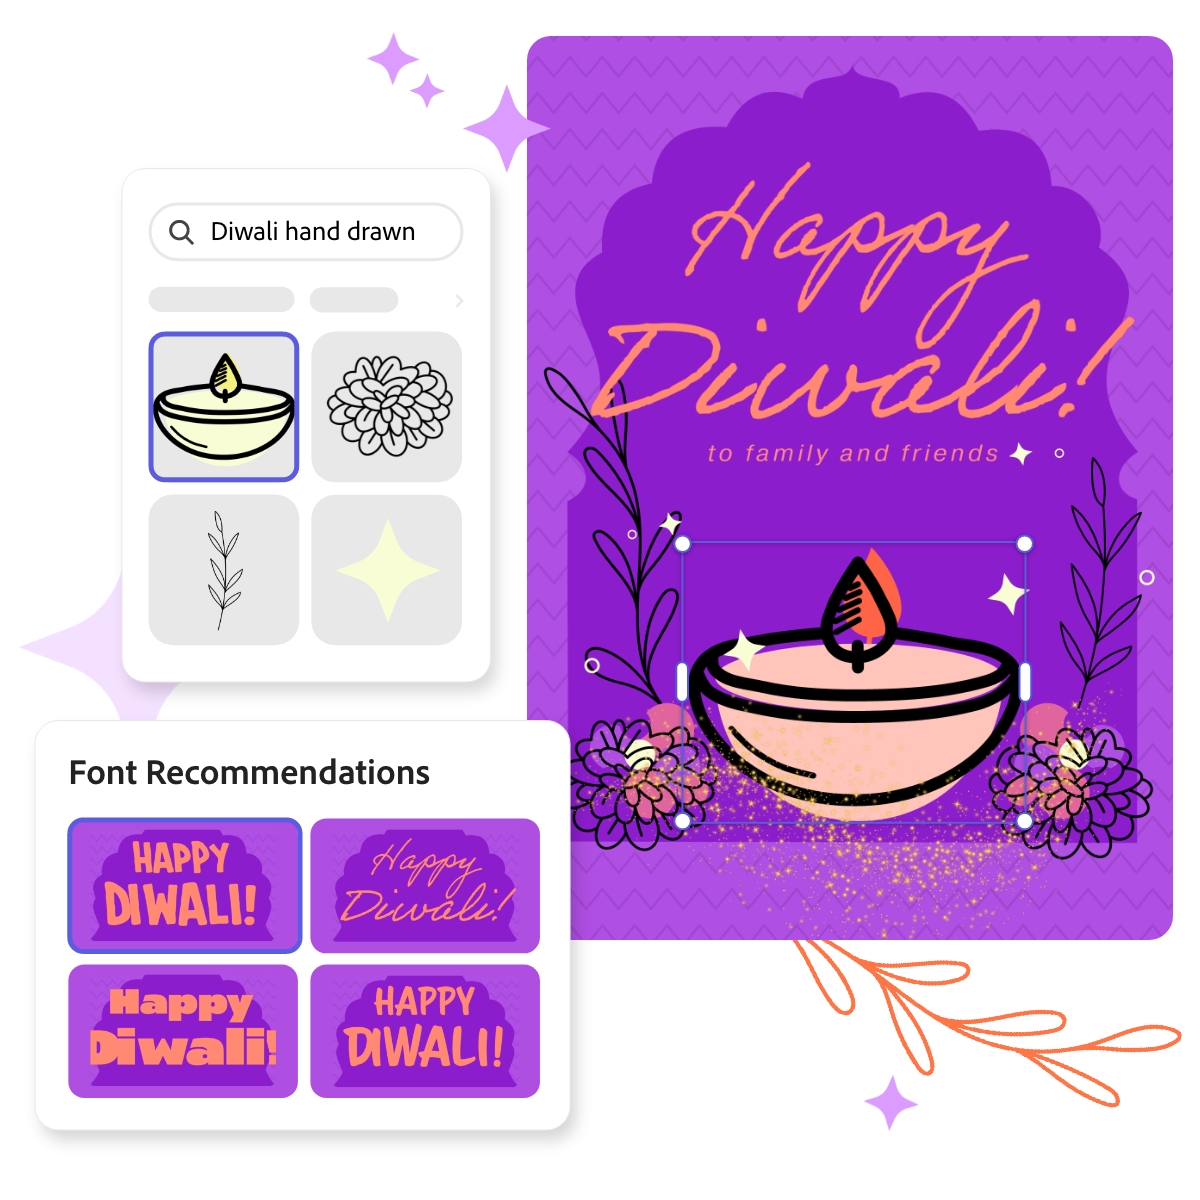 Diwali Greetings - Apps on Google Play